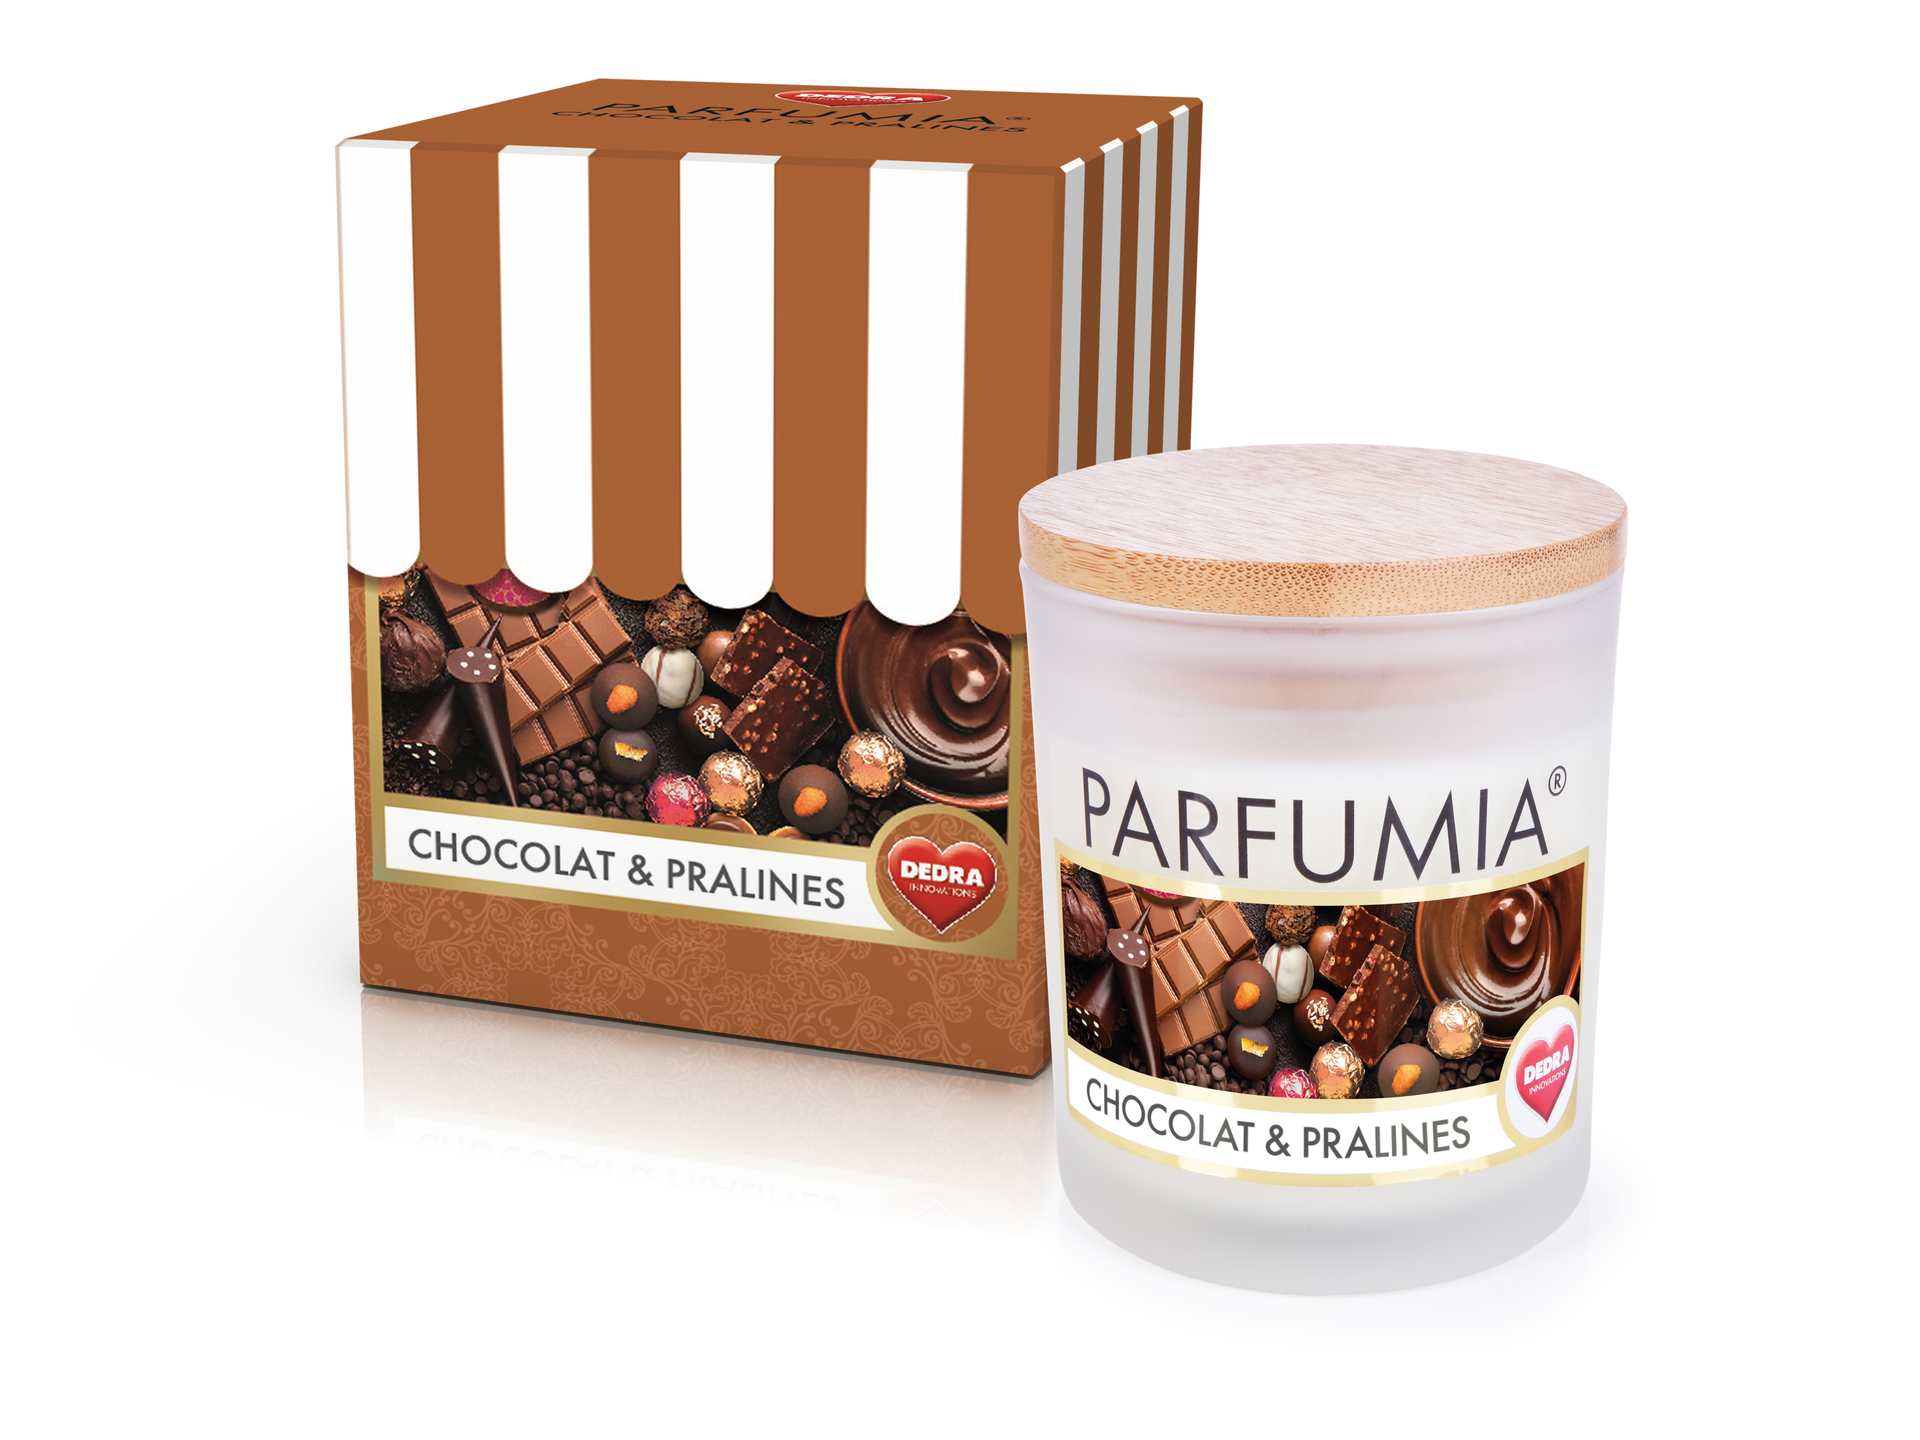 Sójová vonná EKO svíce PARFUMIA®  čokoláda a pralinky, CHOCOLAT & PRALINES